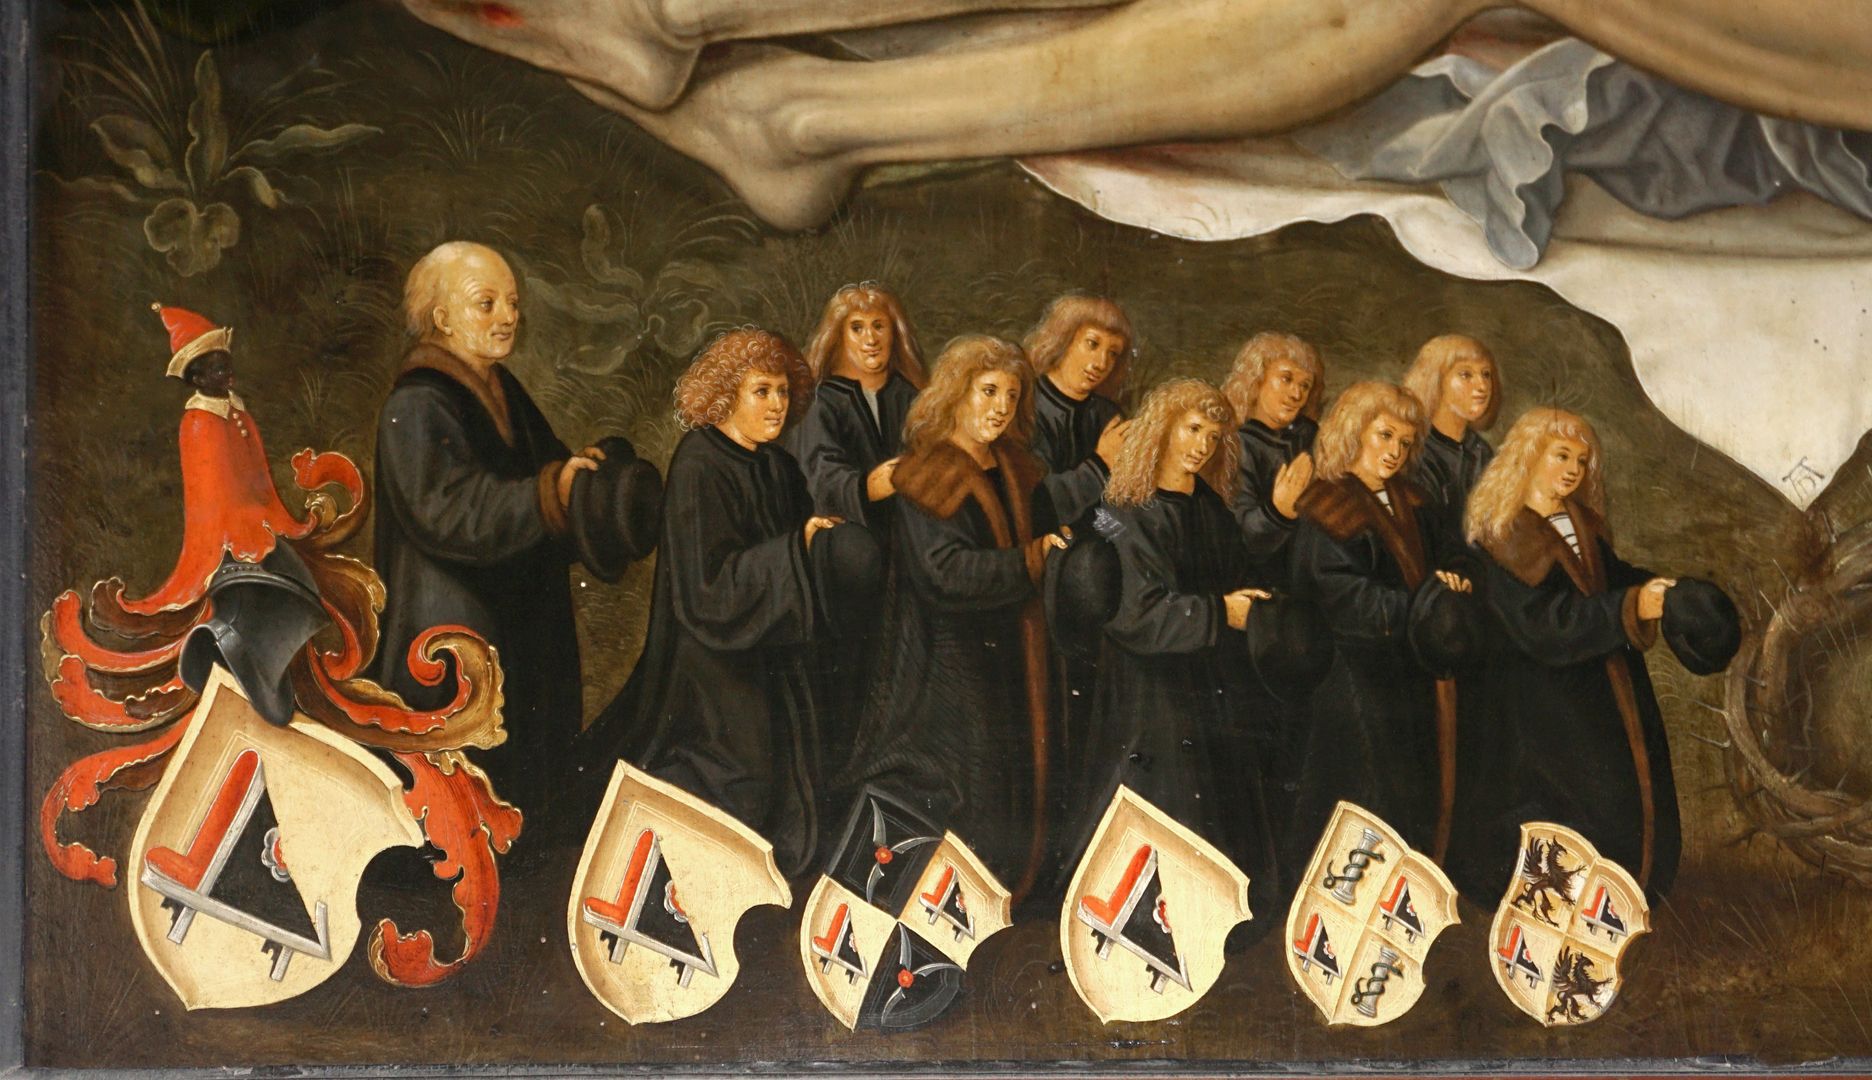 Die Beweinung Christi Stifterfamilie, Männerseite: Karl III. sowie drei verheiratete Söhne mit Allianzwappen Holzschuher/Groland, Müntzer und Pühl.